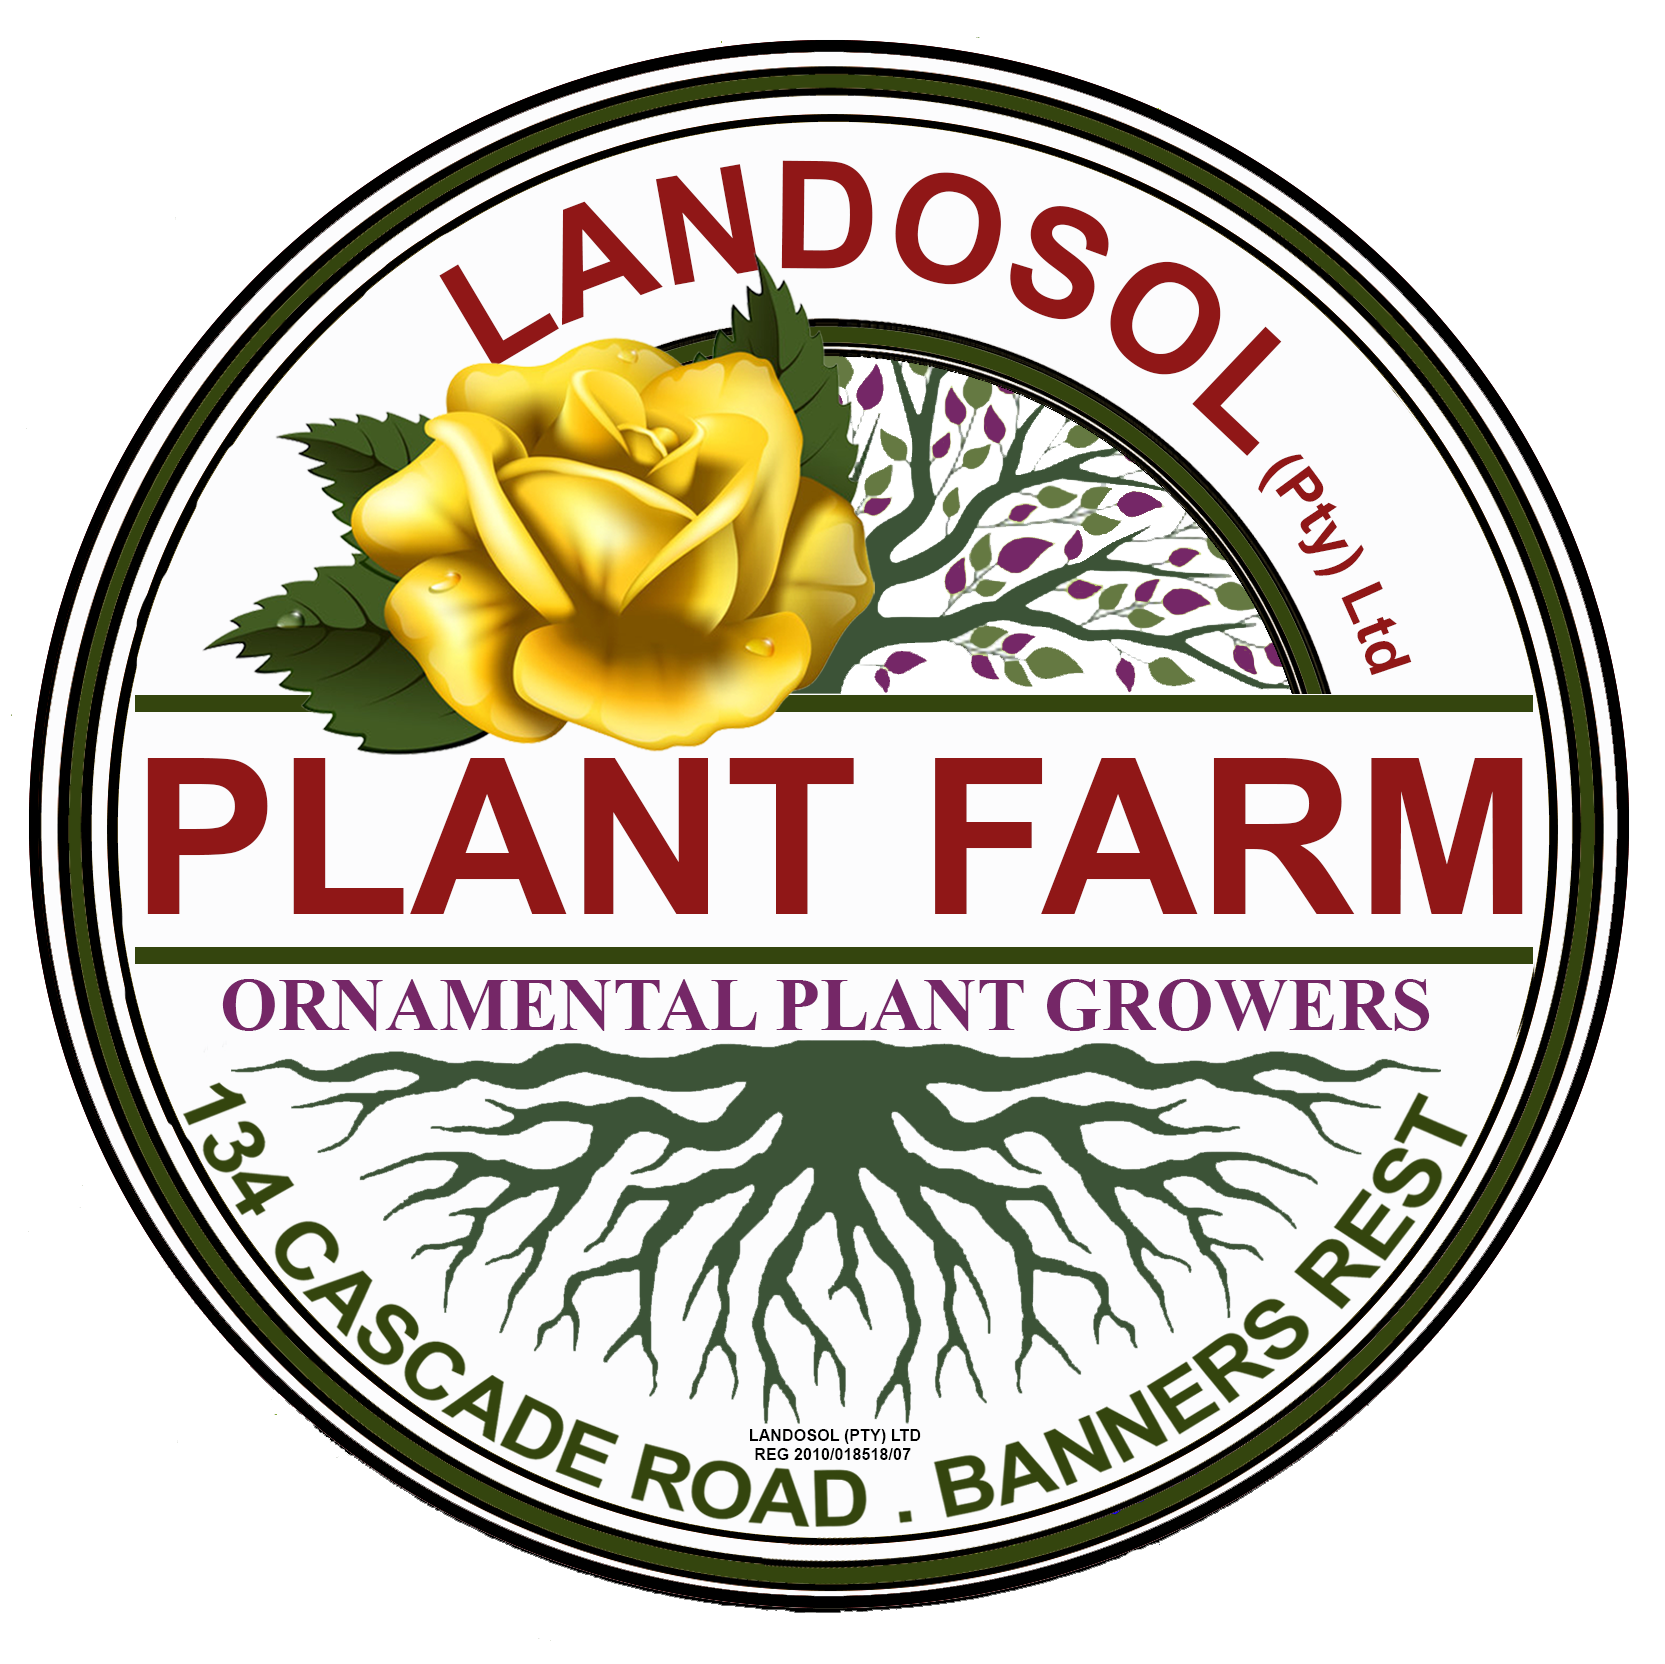 LANDOSOL PLANT FARM